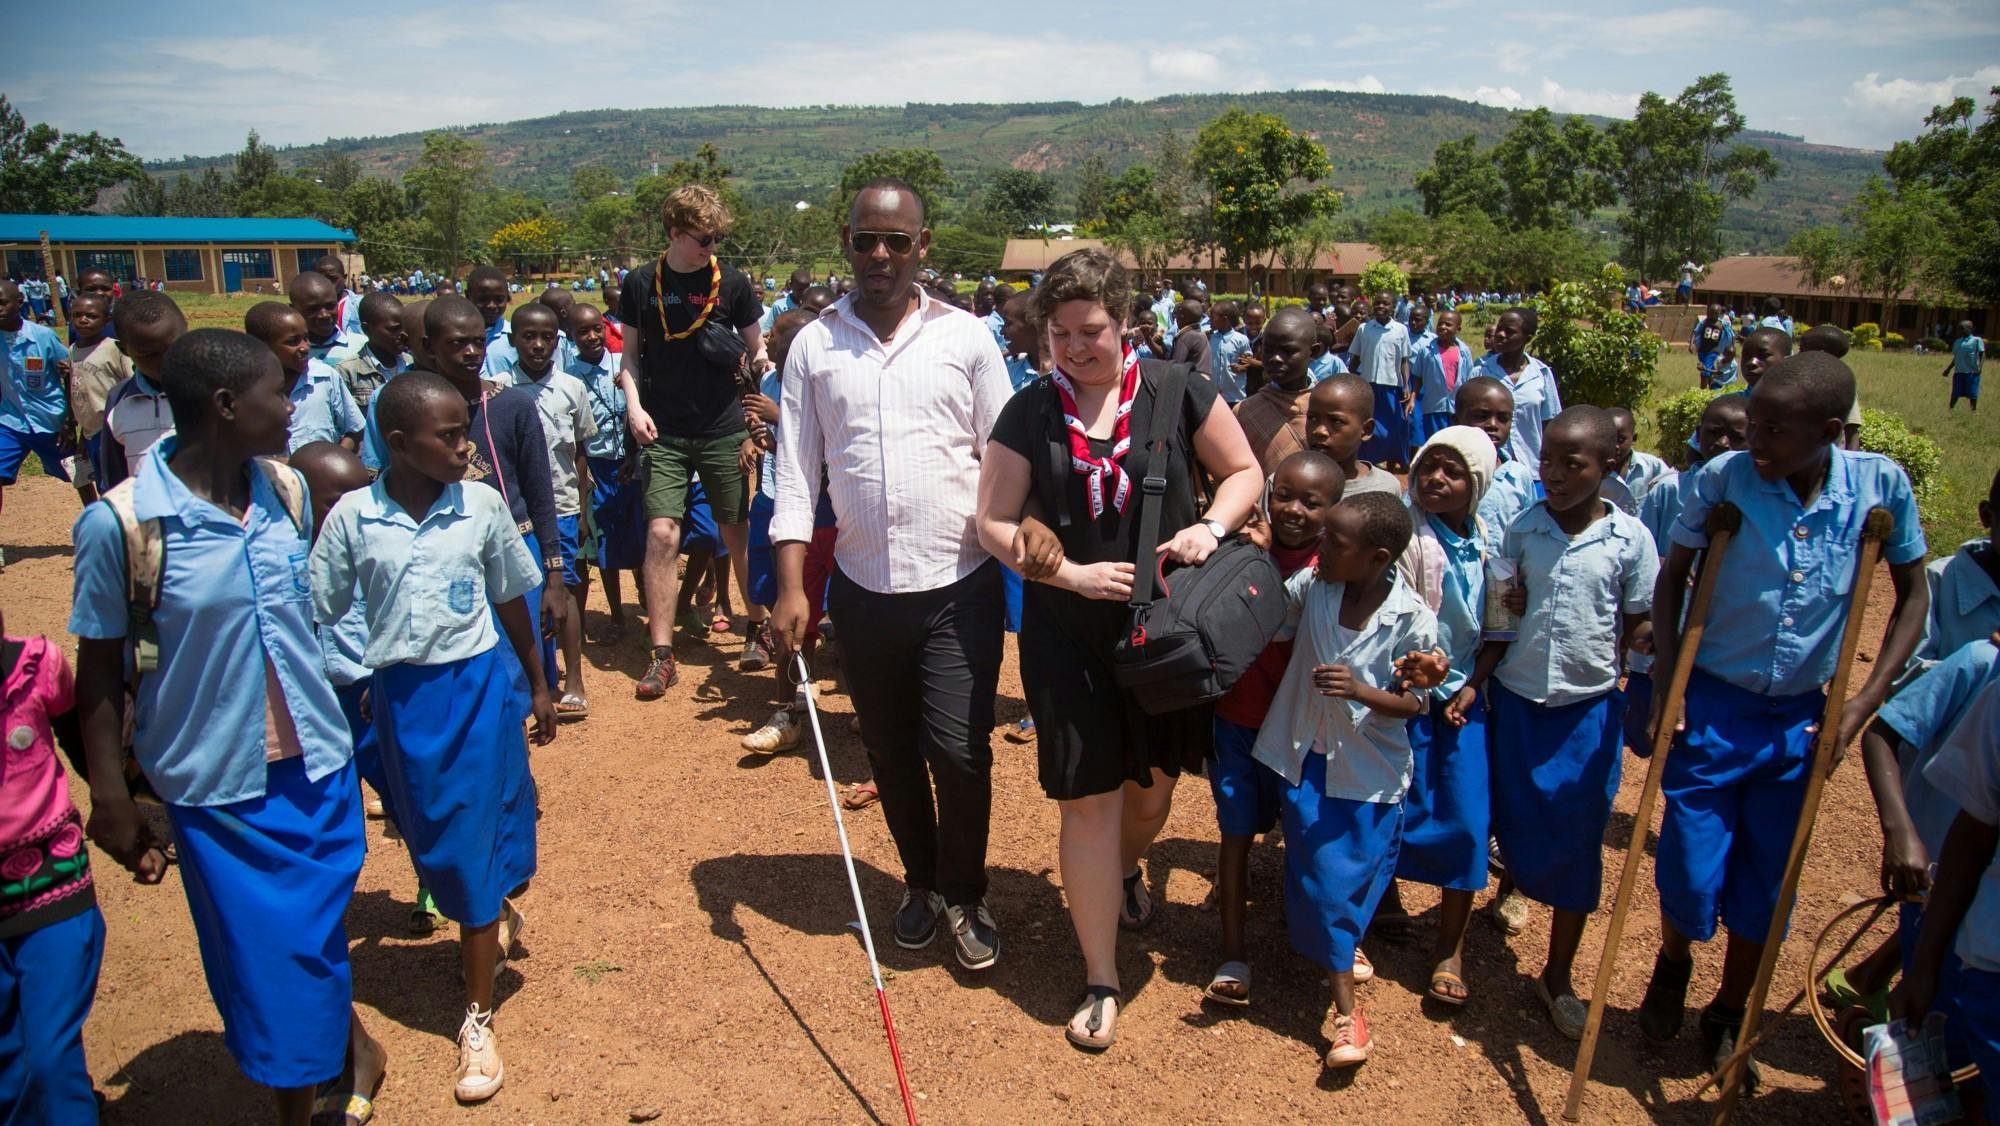 Spejderhjælpen besøger i 2017 en skole i Rwanda i forbindelse med en partneridentifikation, og senere projekt med handicapbevægelsen. Foto: Timothy Chester for Danske Handicaporganisationer.